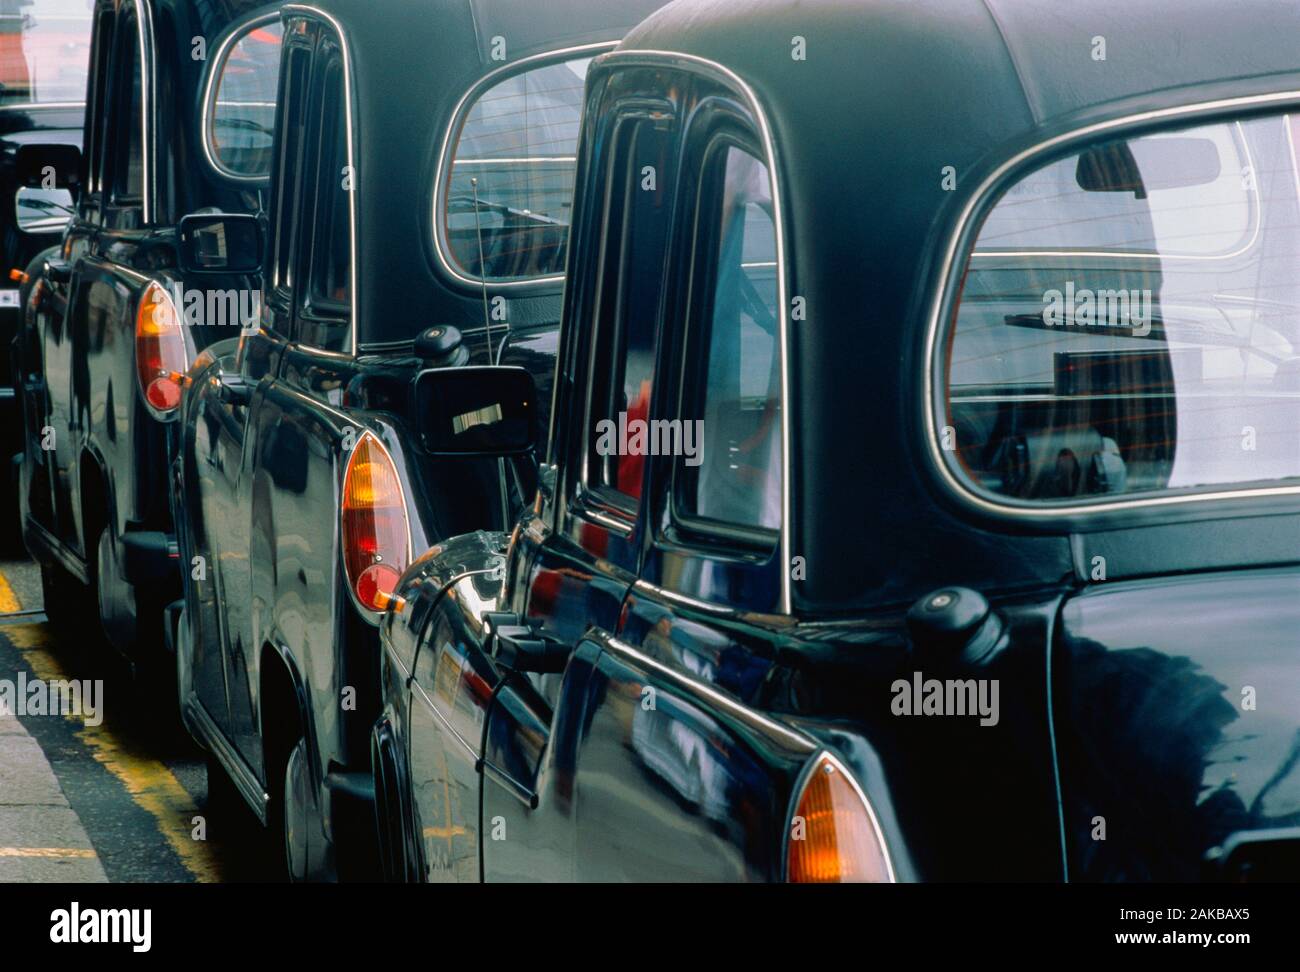 Vue arrière du noir traditionnel en stationnement taxis, Londres, Angleterre, Royaume-Uni Banque D'Images